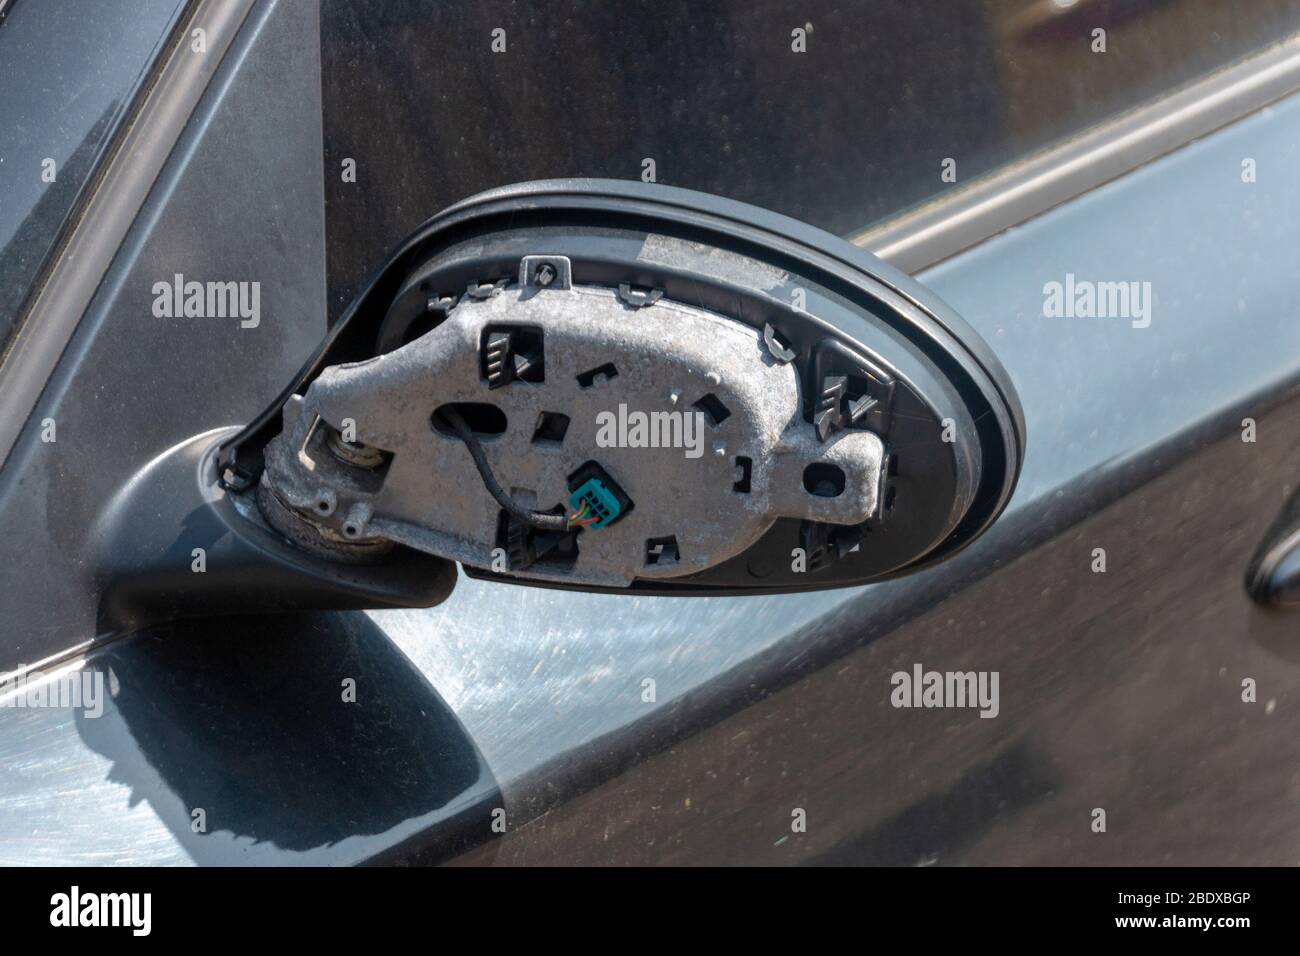 vue rapprochée de l'arrière d'un mirrow côté voiture d'une voiture qui a été endommagée Banque D'Images